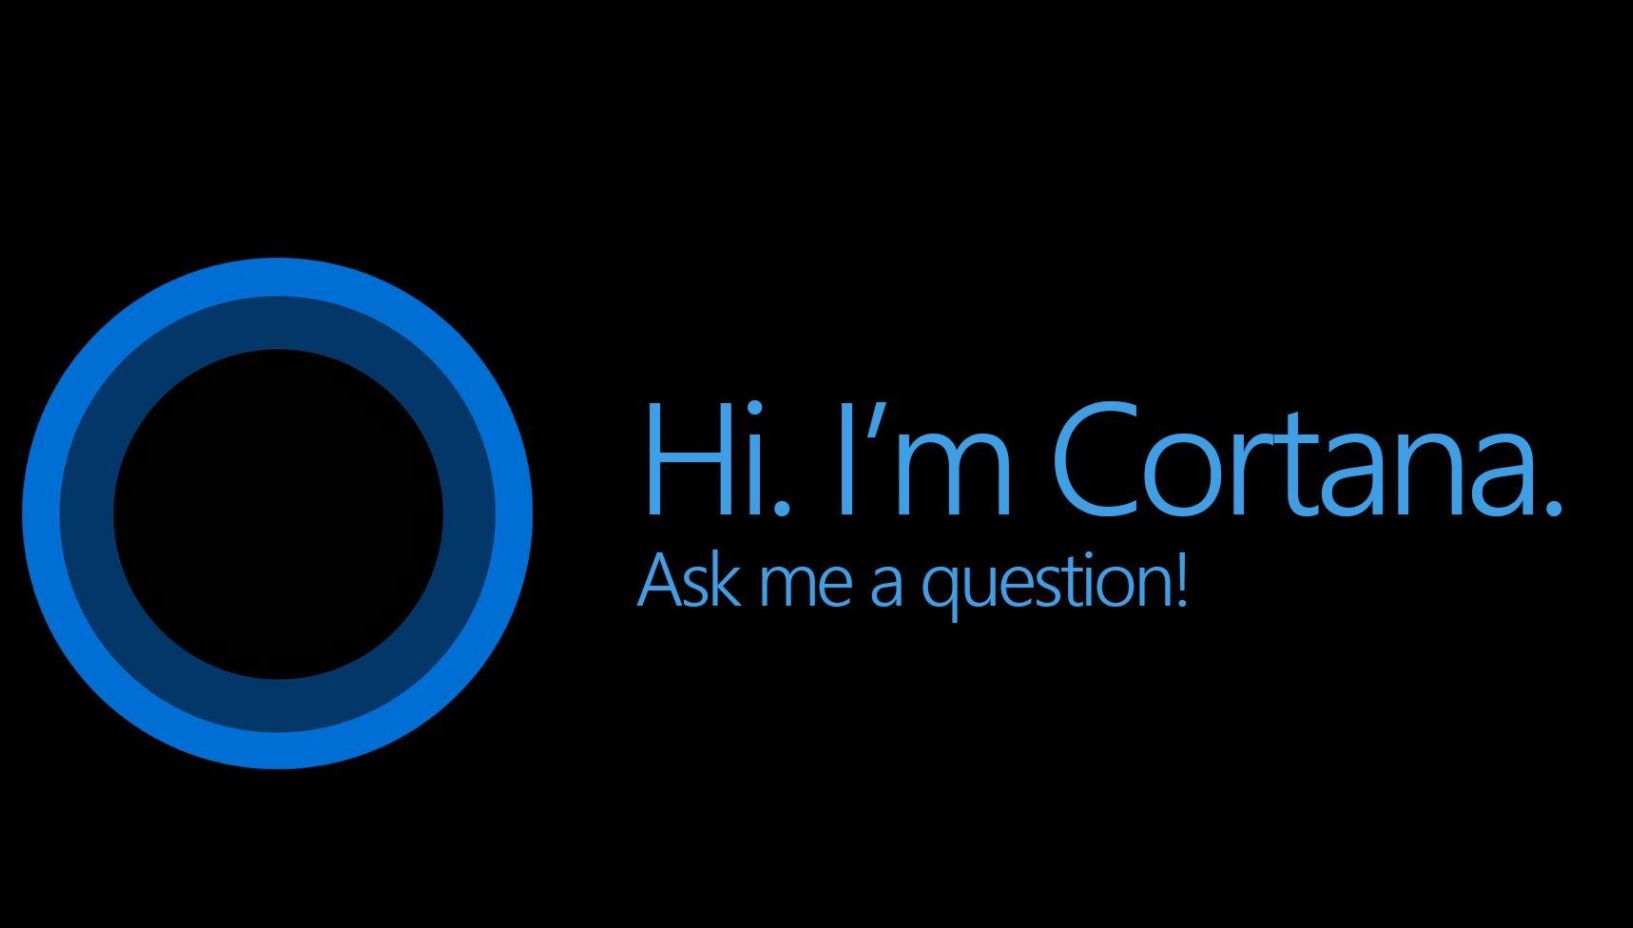 Cortana no Windows 10 está supostamente quebrada - e as pessoas não estão felizes